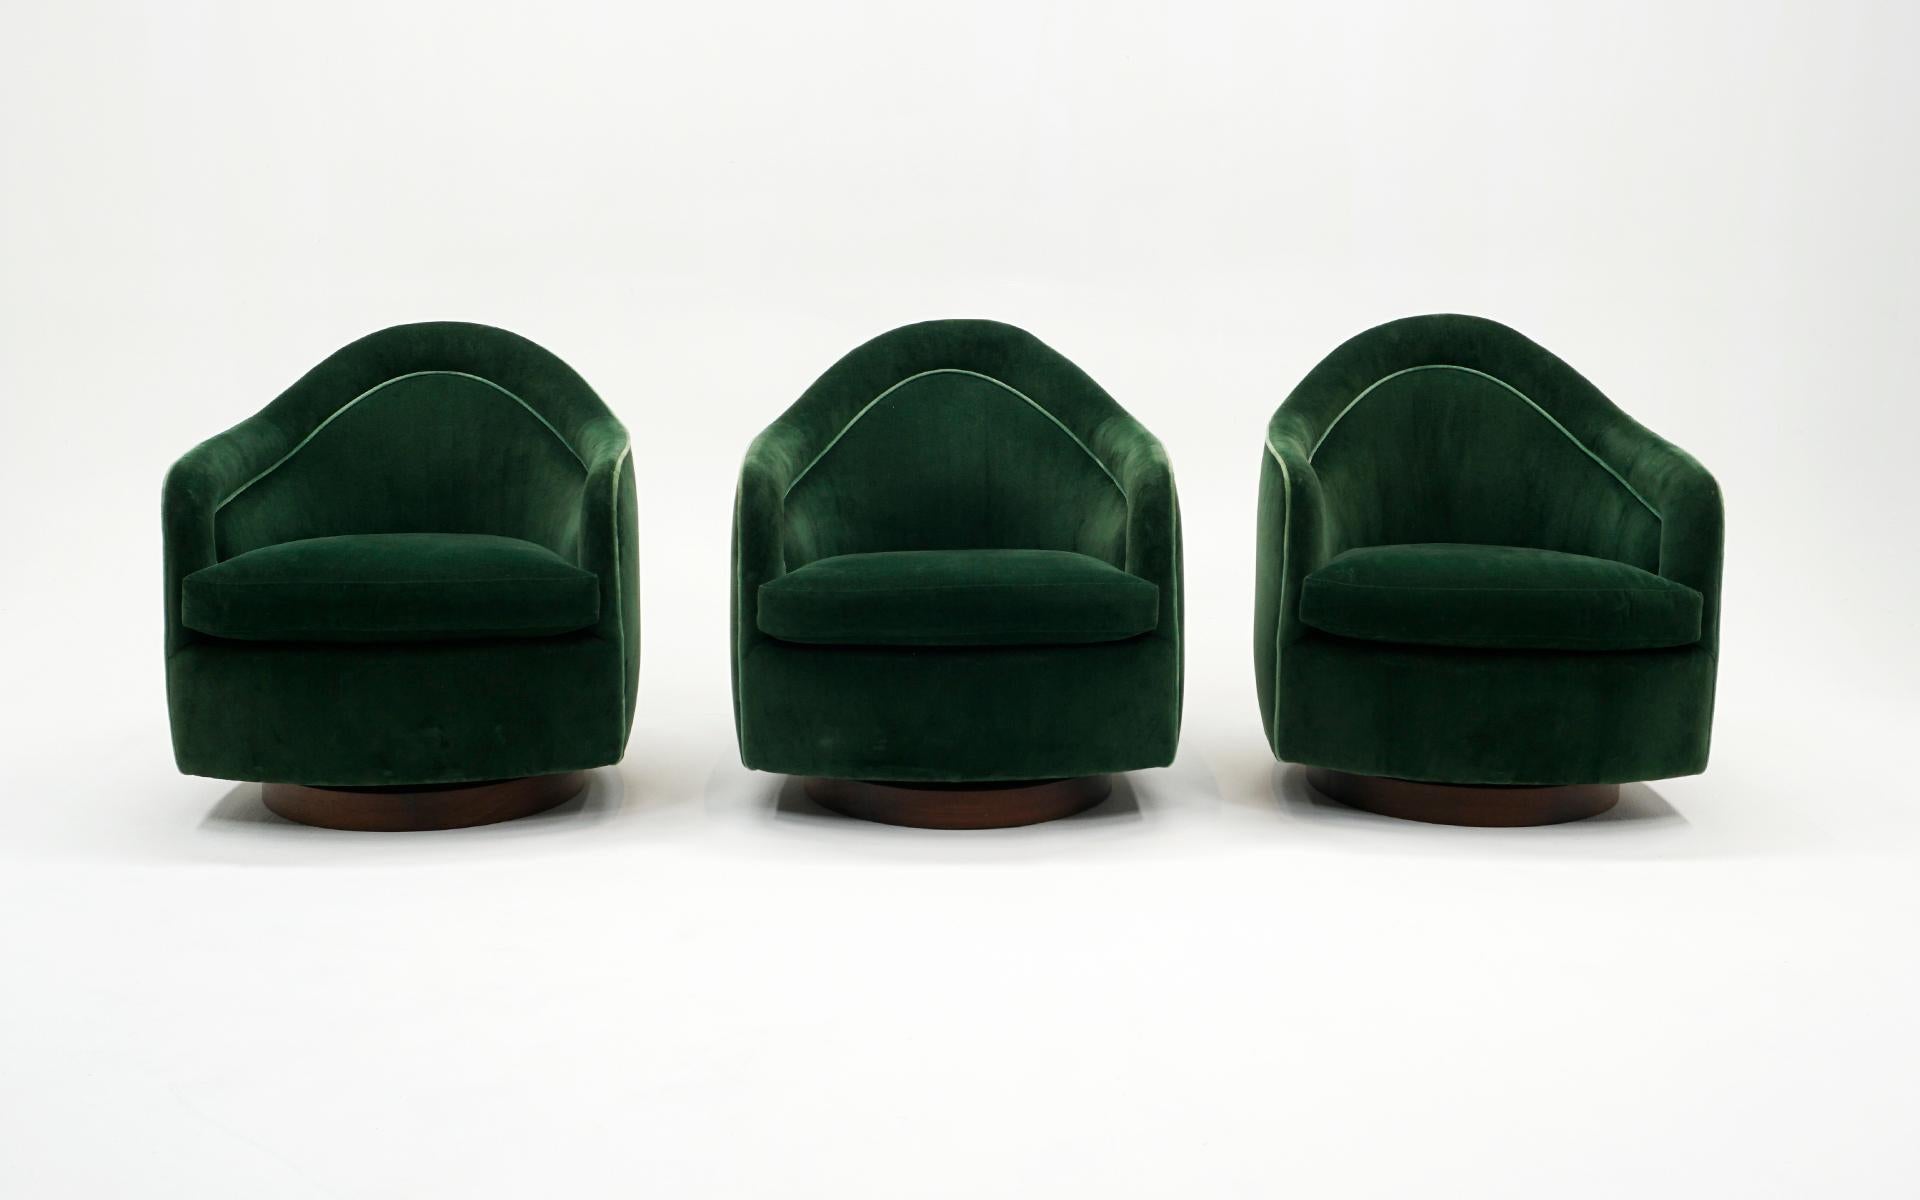 Sechs (6) Milo Baughman Sessel mit hoher Rückenlehne und drehbarer Sitzfläche.  Drei in dunklerem Grün mit heller grüner Paspelierung und drei in hellerem Grün mit dunklerer grüner Paspelierung. Alle Bezüge sind neu und frei von Flecken, Rissen oder